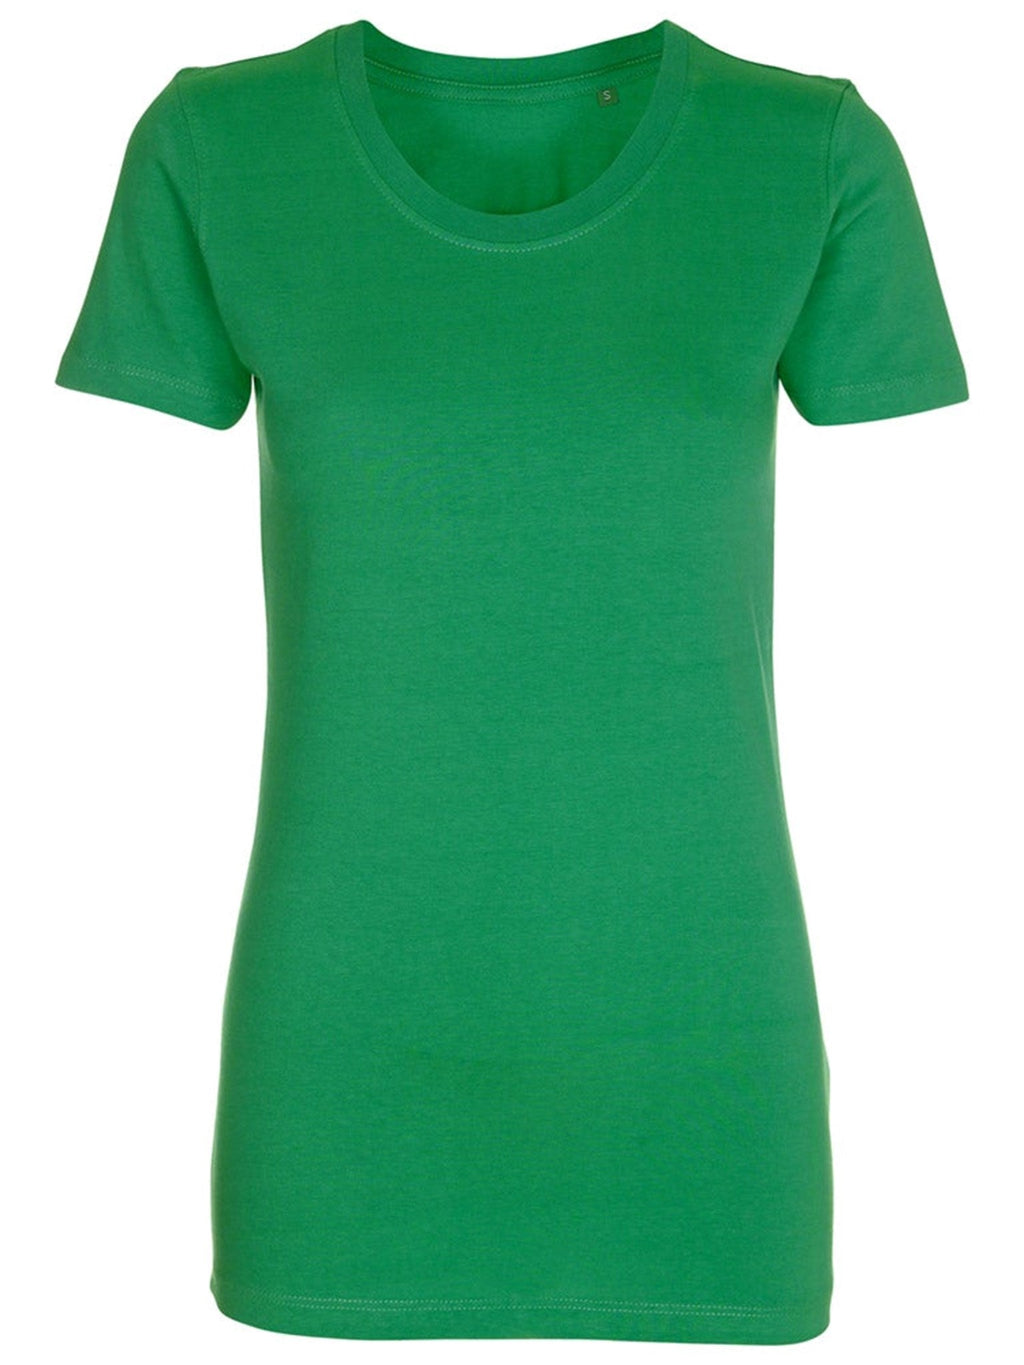 Gemonteerd t -shirt - groen